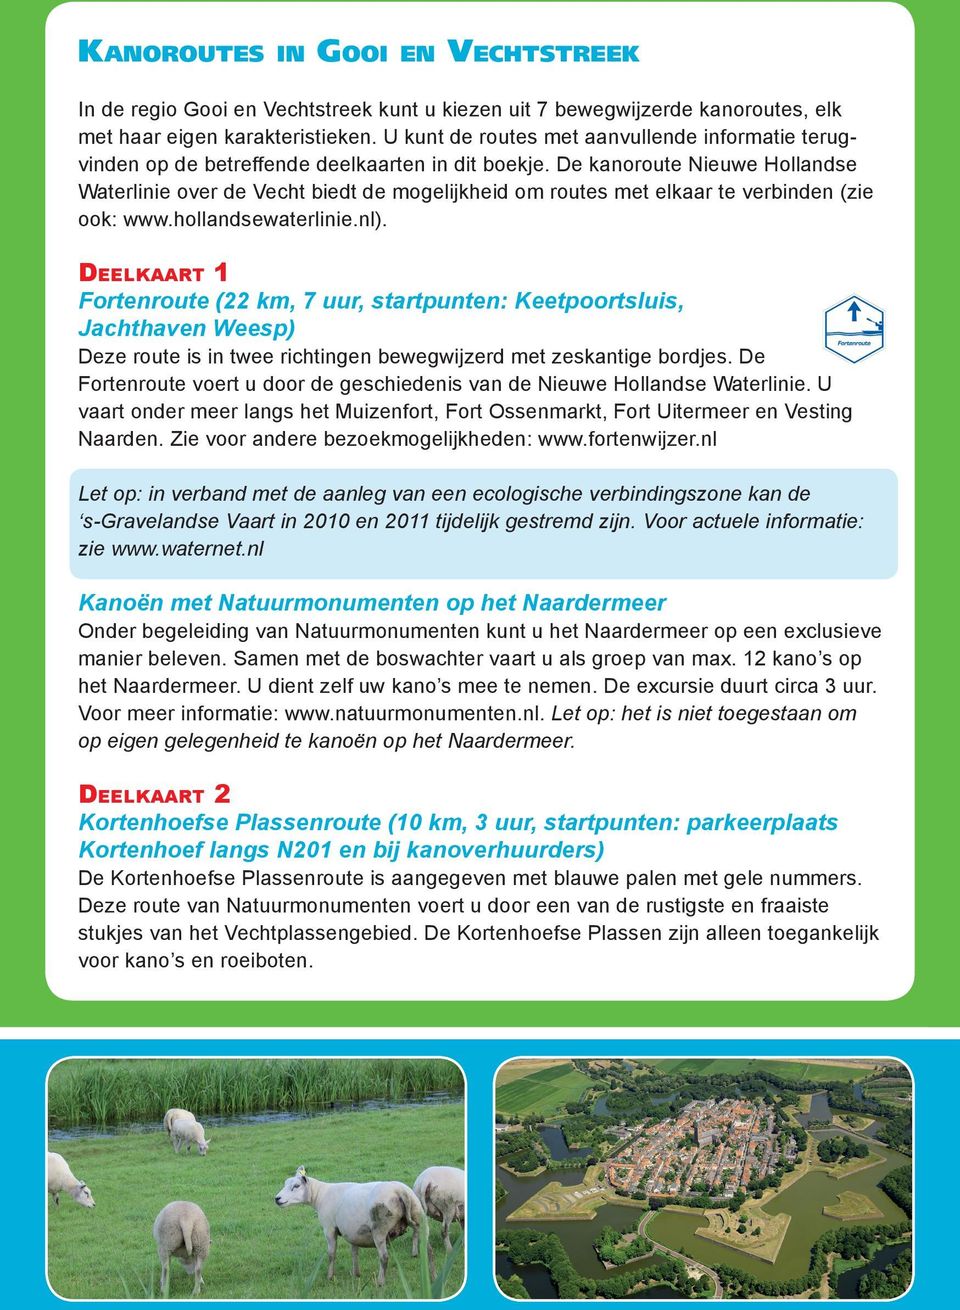 De kanoroute Nieuwe Hollandse Waterlinie over de Vecht biedt de mogelijkheid om routes met elkaar te verbinden (zie ook: www.hollandsewaterlinie.nl).